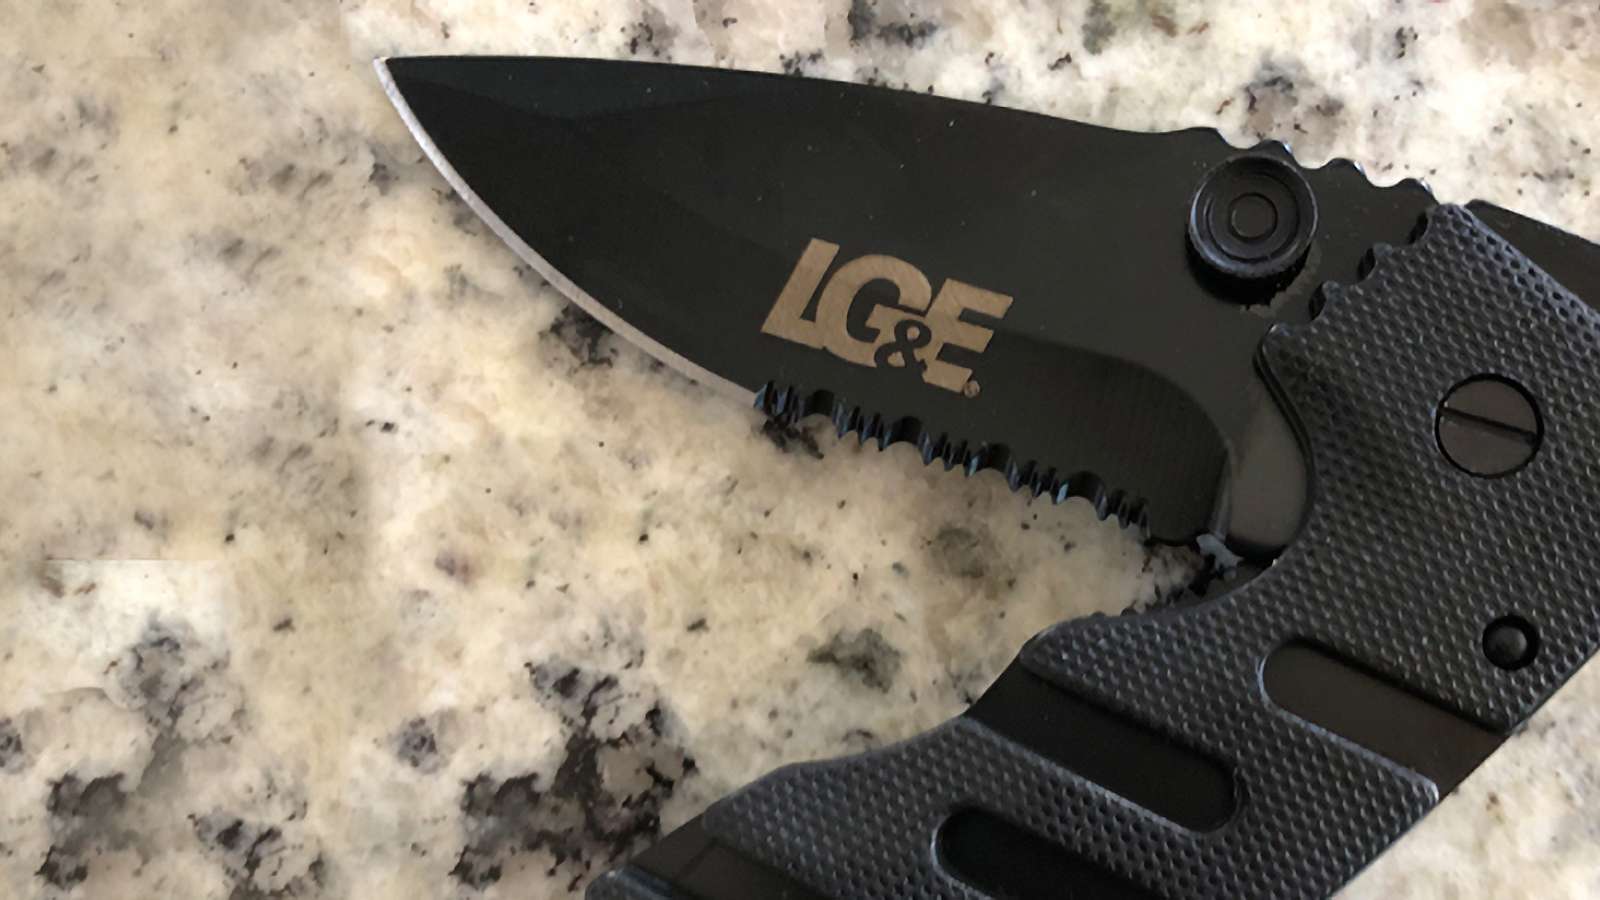 folding knife with LG&E logo on it